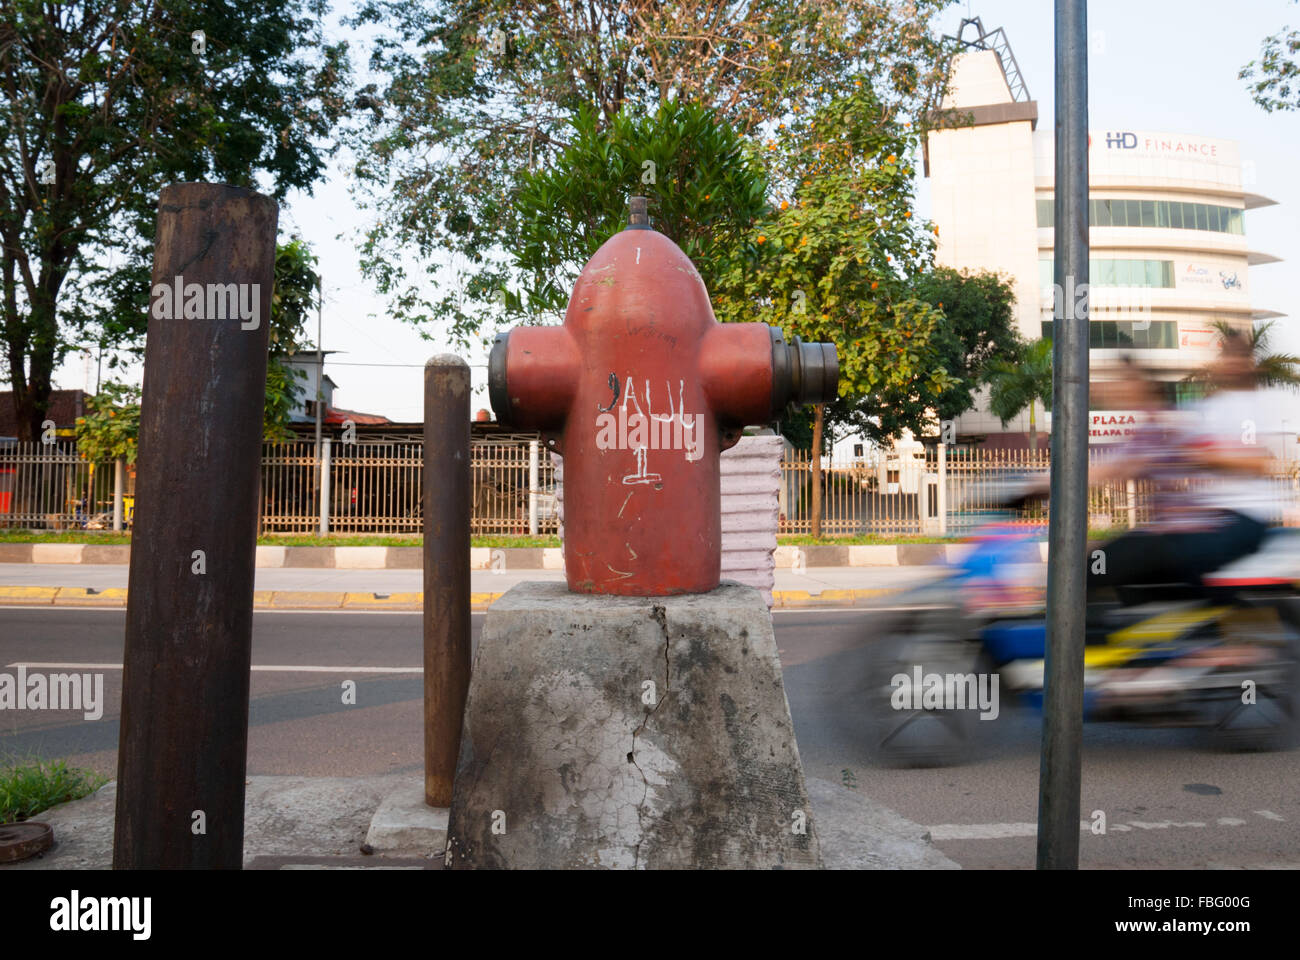 A roadside fire hydrant in Kelapa Dua, Kebon Jeruk, West Jakarta, Jakarta, Indonesia. Stock Photo